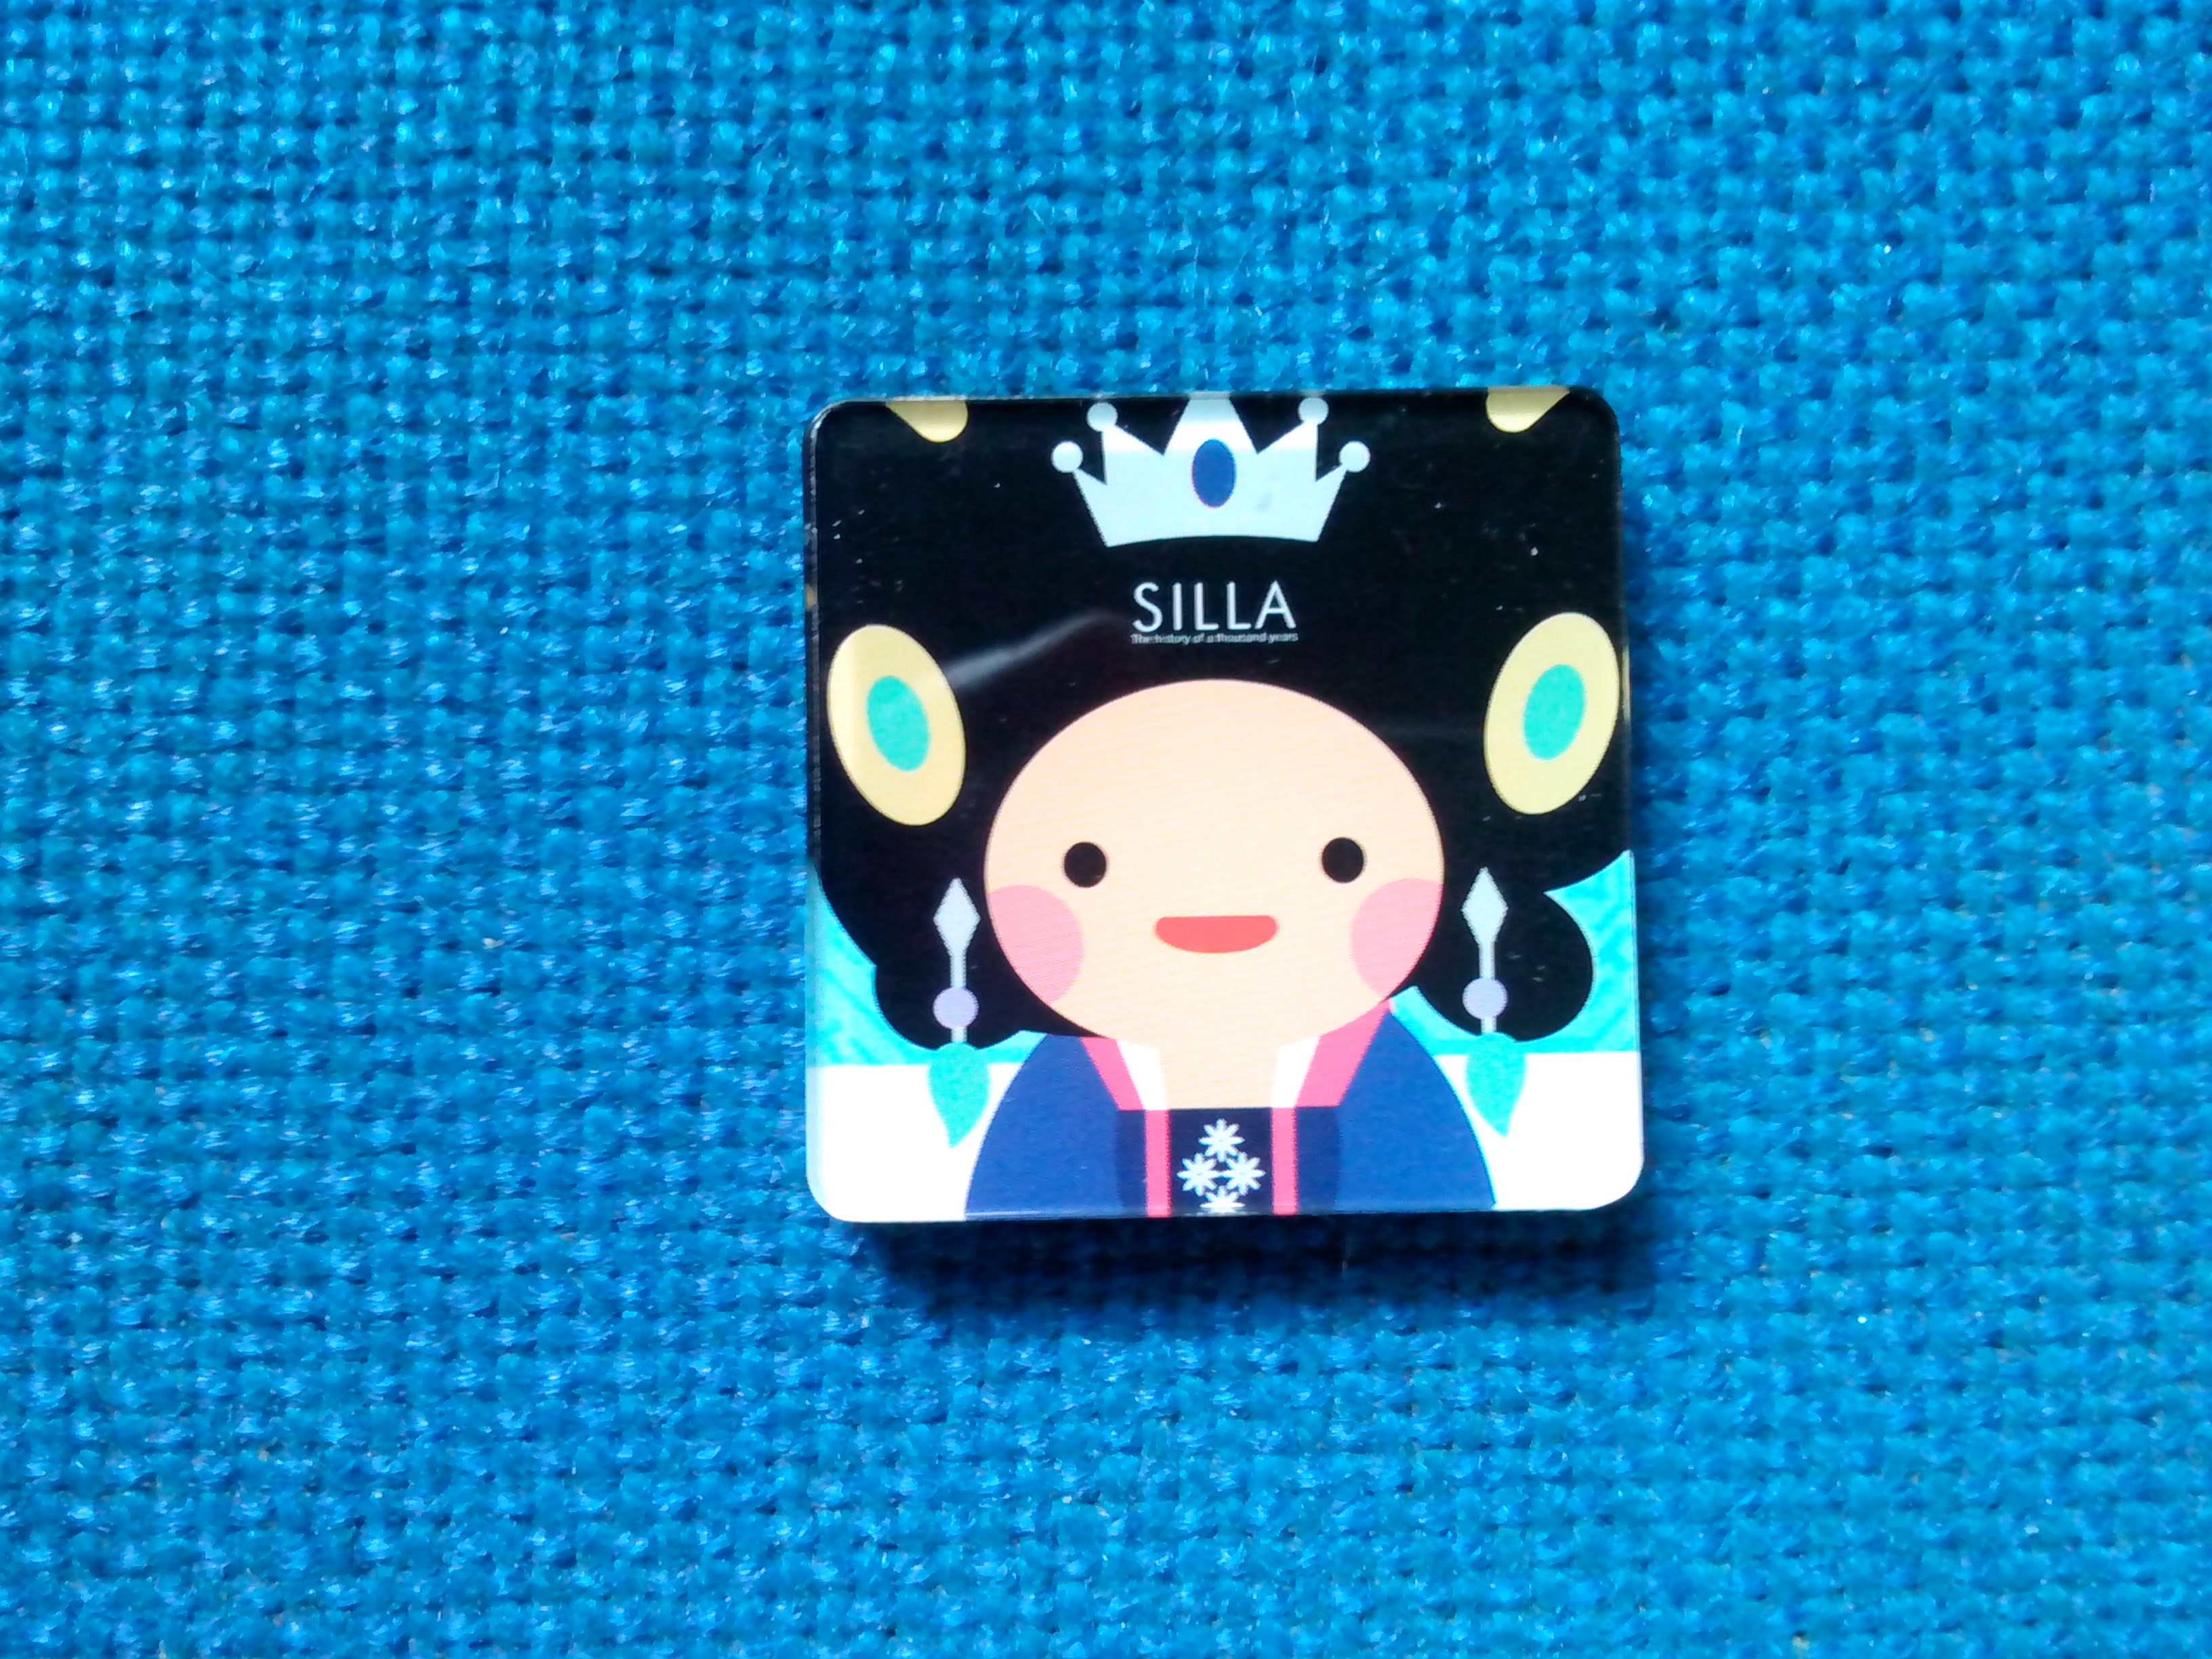 韓國雪櫃磁貼- Silla